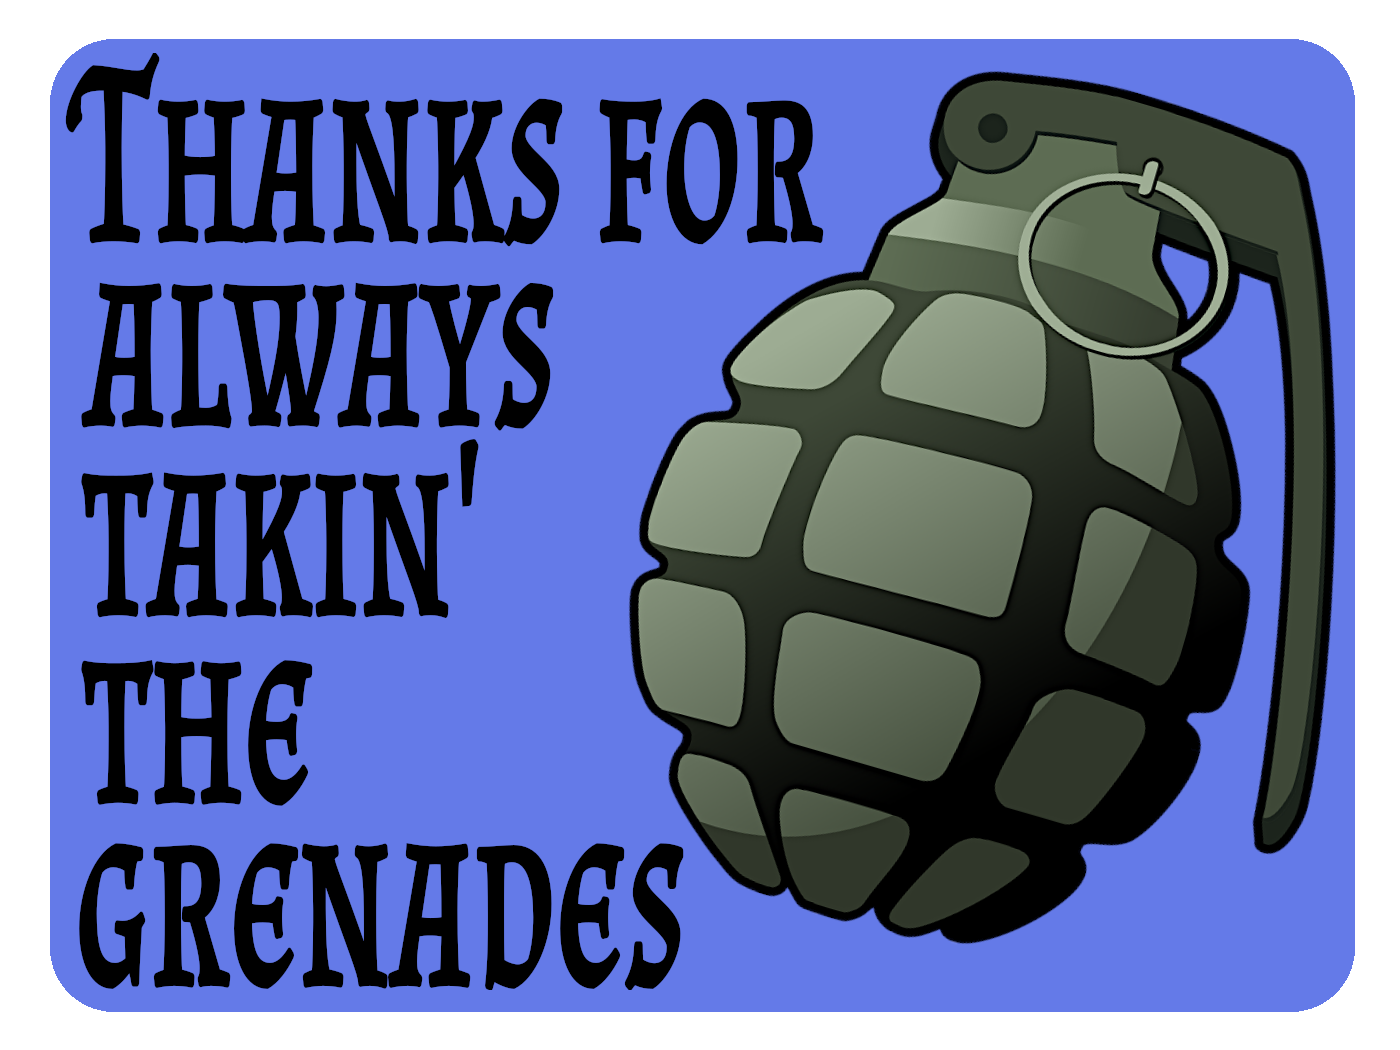 Takin' Grenades